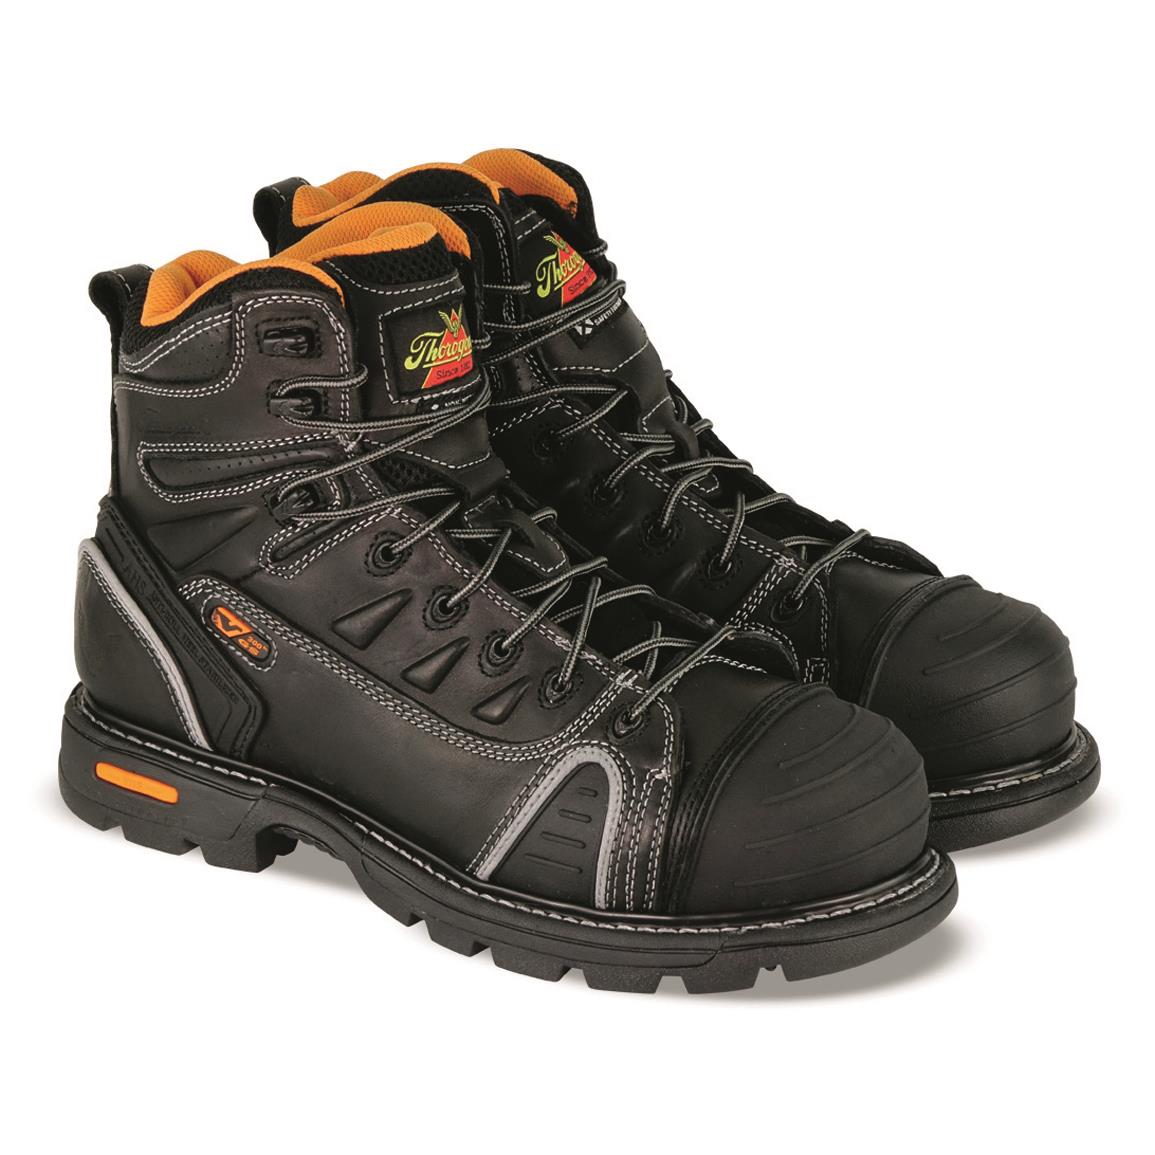 Thorogood Men's GEN-flex2 Series 6" Safety Toe Work Boots, Black